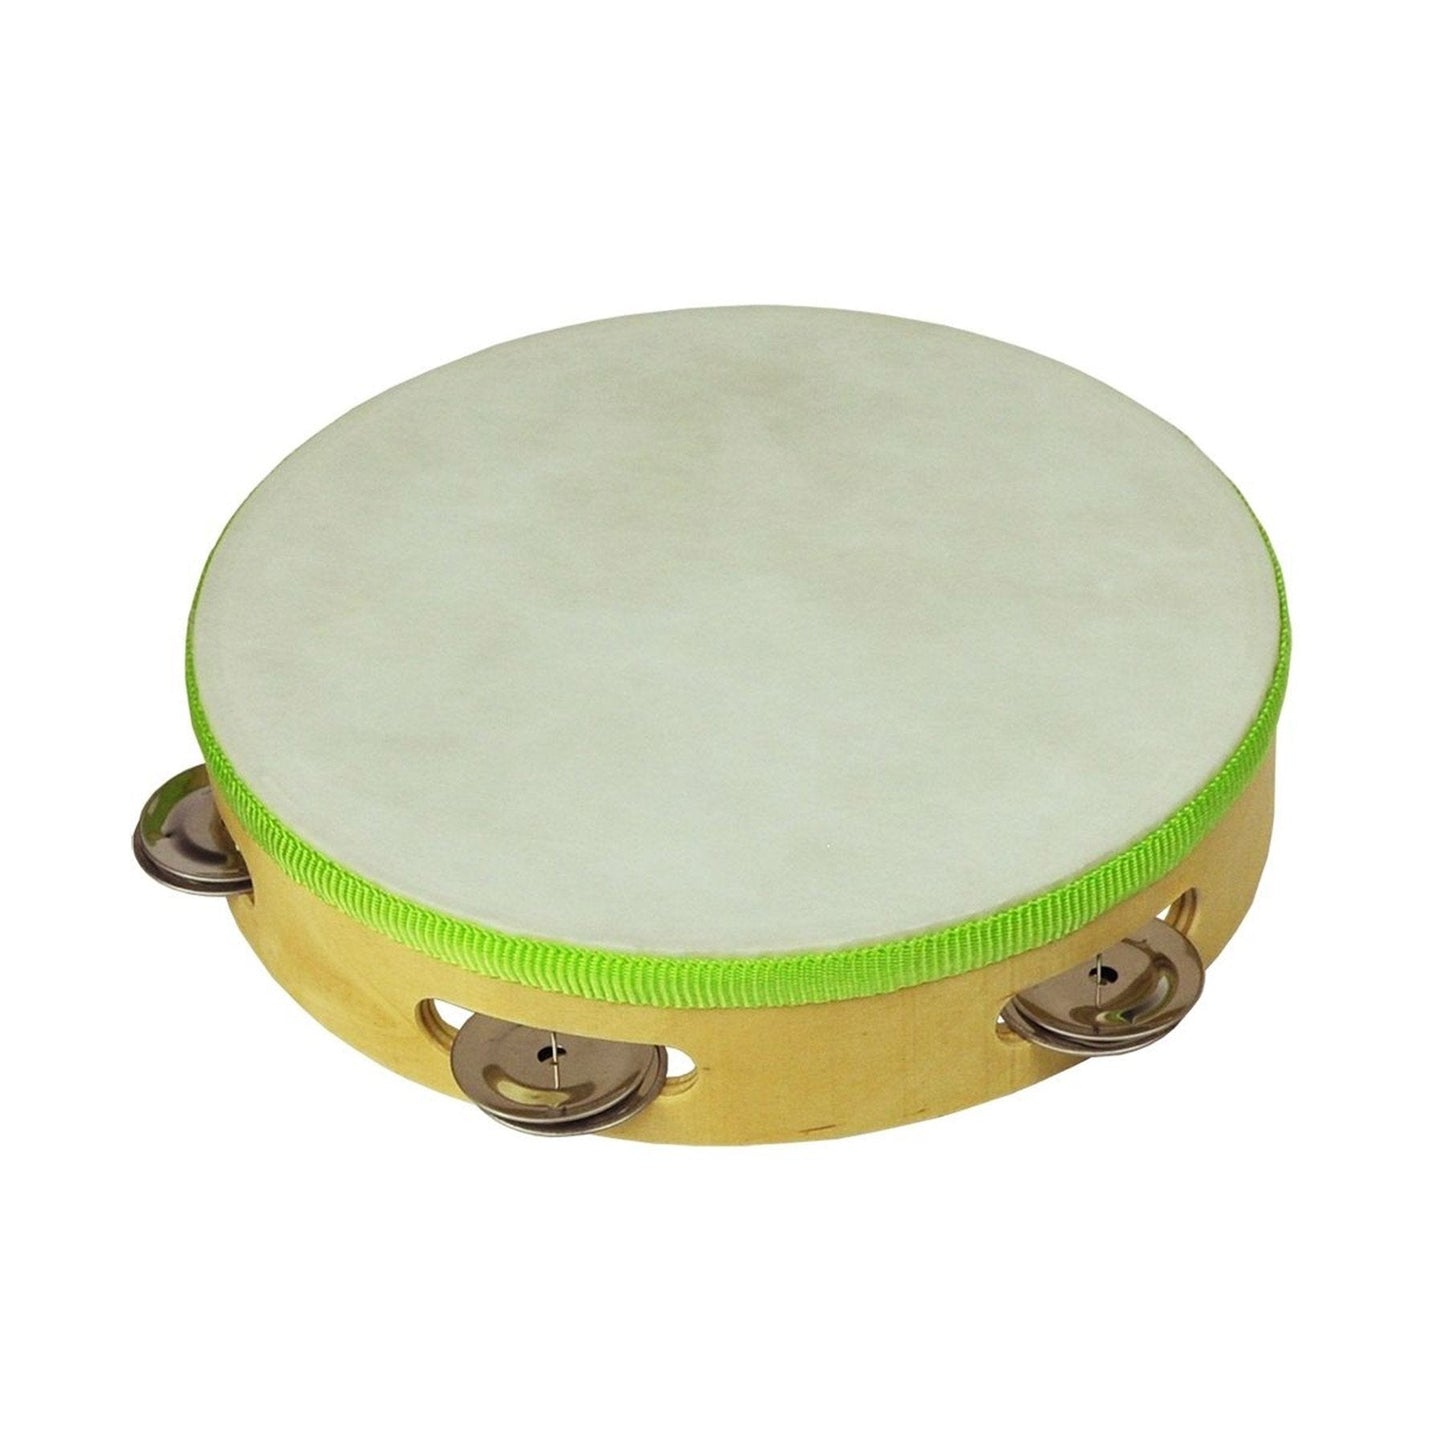 Drumfire Headed Wooden Tambourine (8")